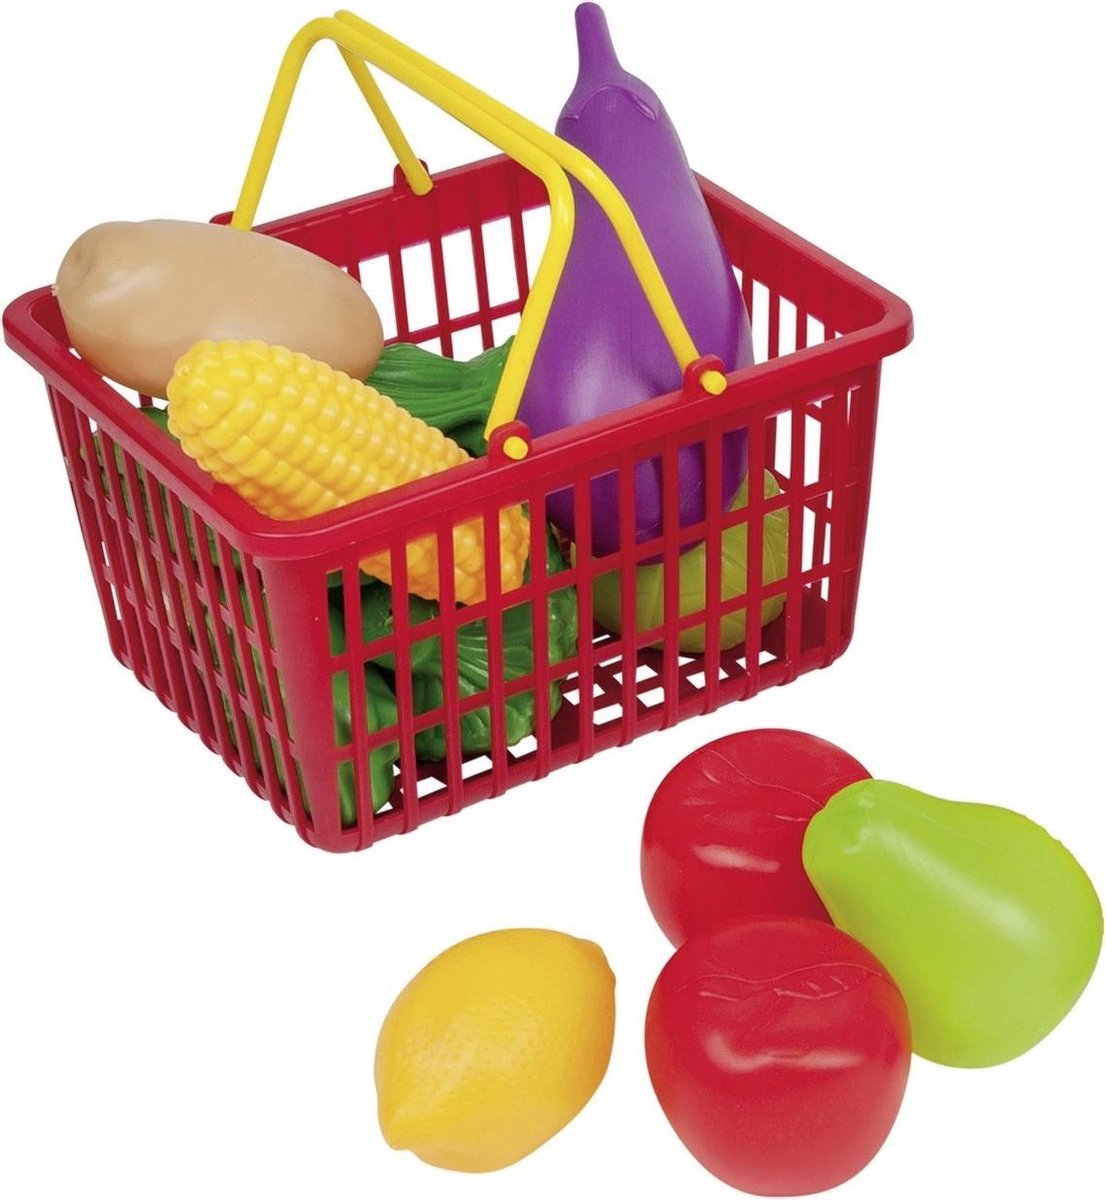 Rood speelgoed boodschappen/winkelmandje met groente en fruit - Speelgoed - Winkelmanden - Winkelmandjes met boodschappen - Winkeltje spelen - Merkloos